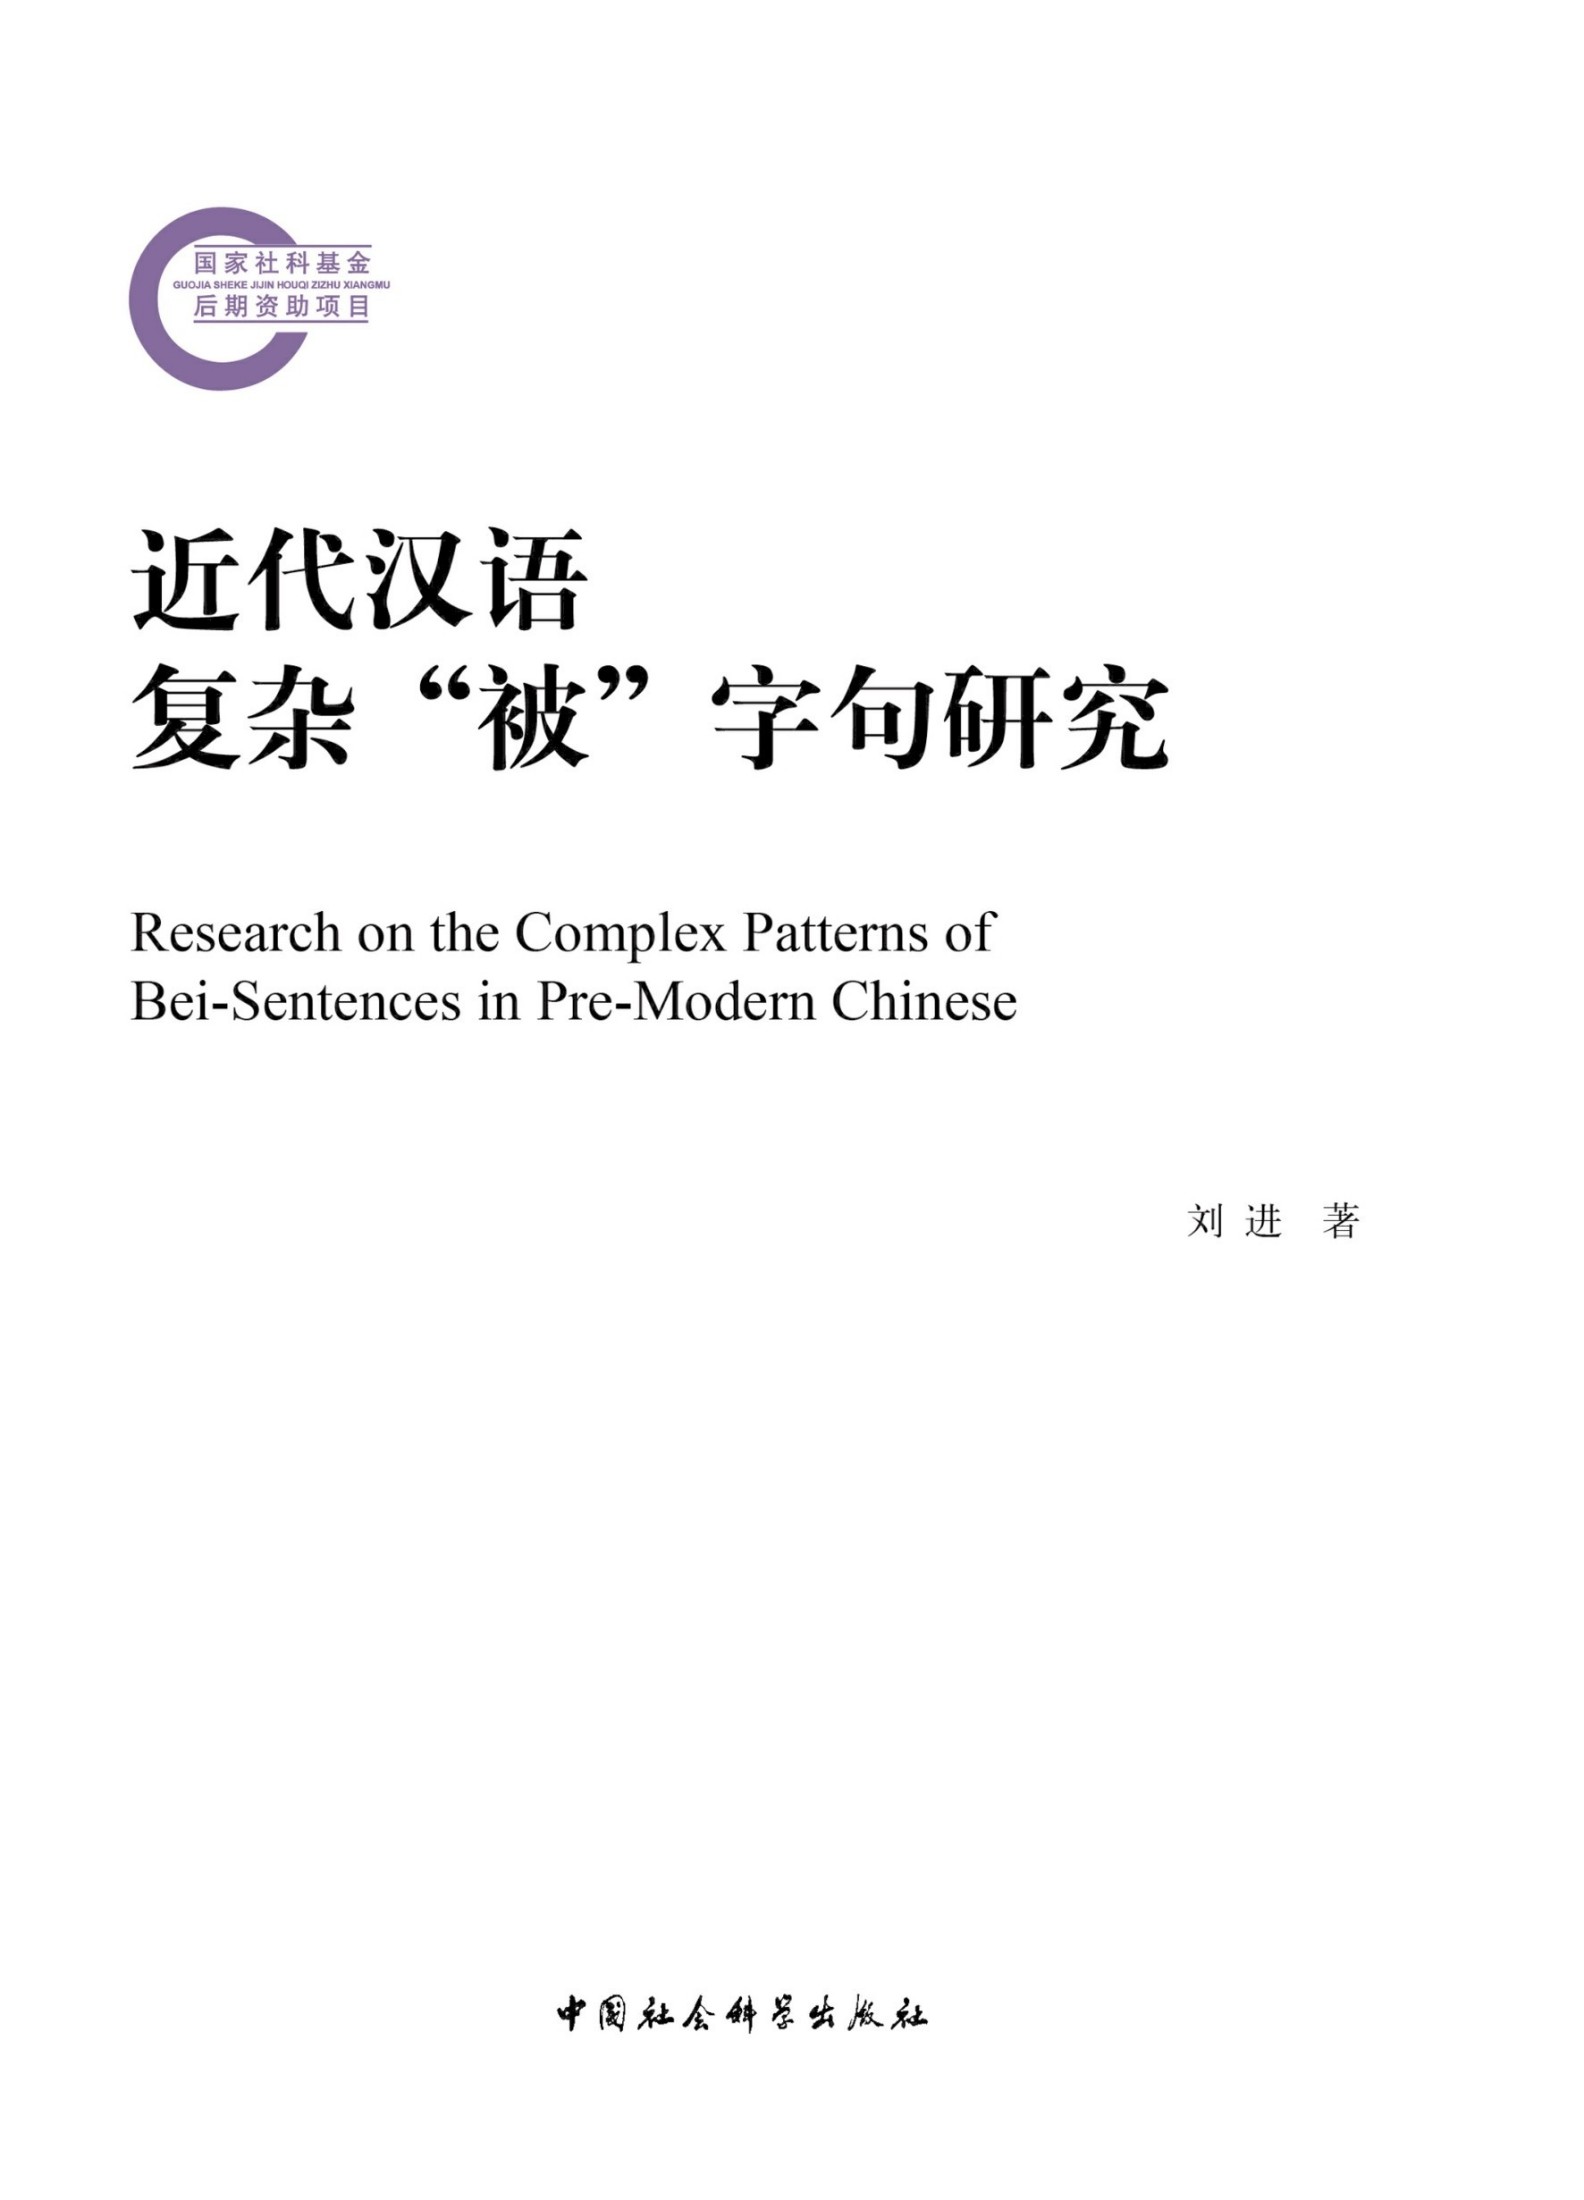 近代汉语复杂“被”字句研究